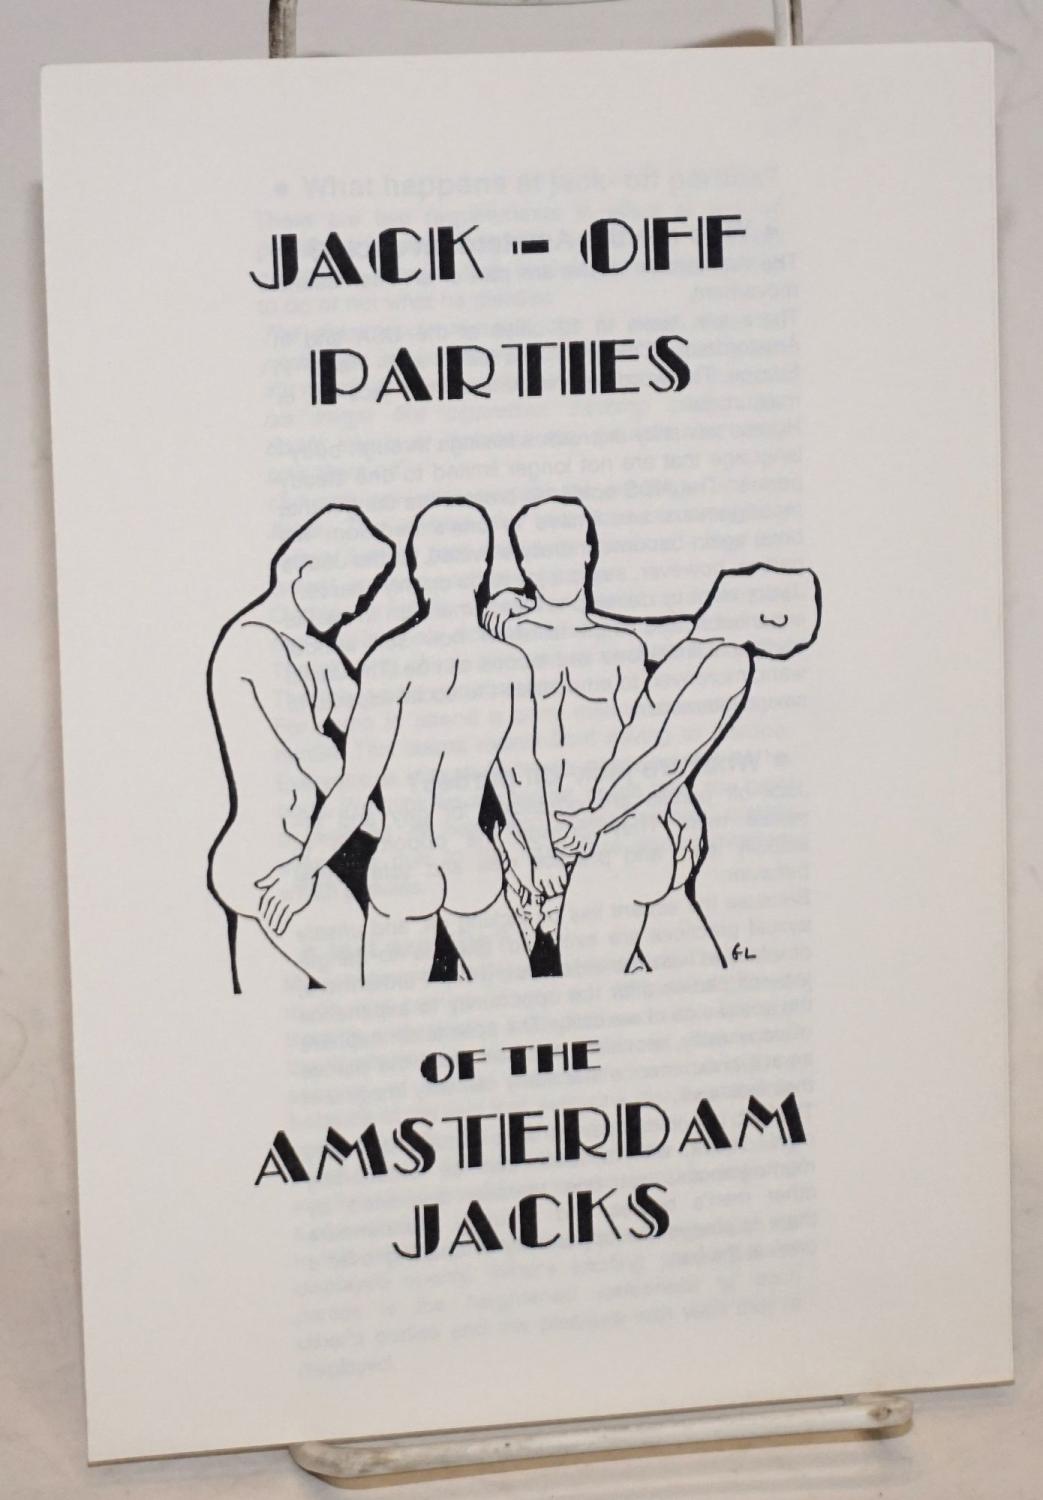 Jack off jacks